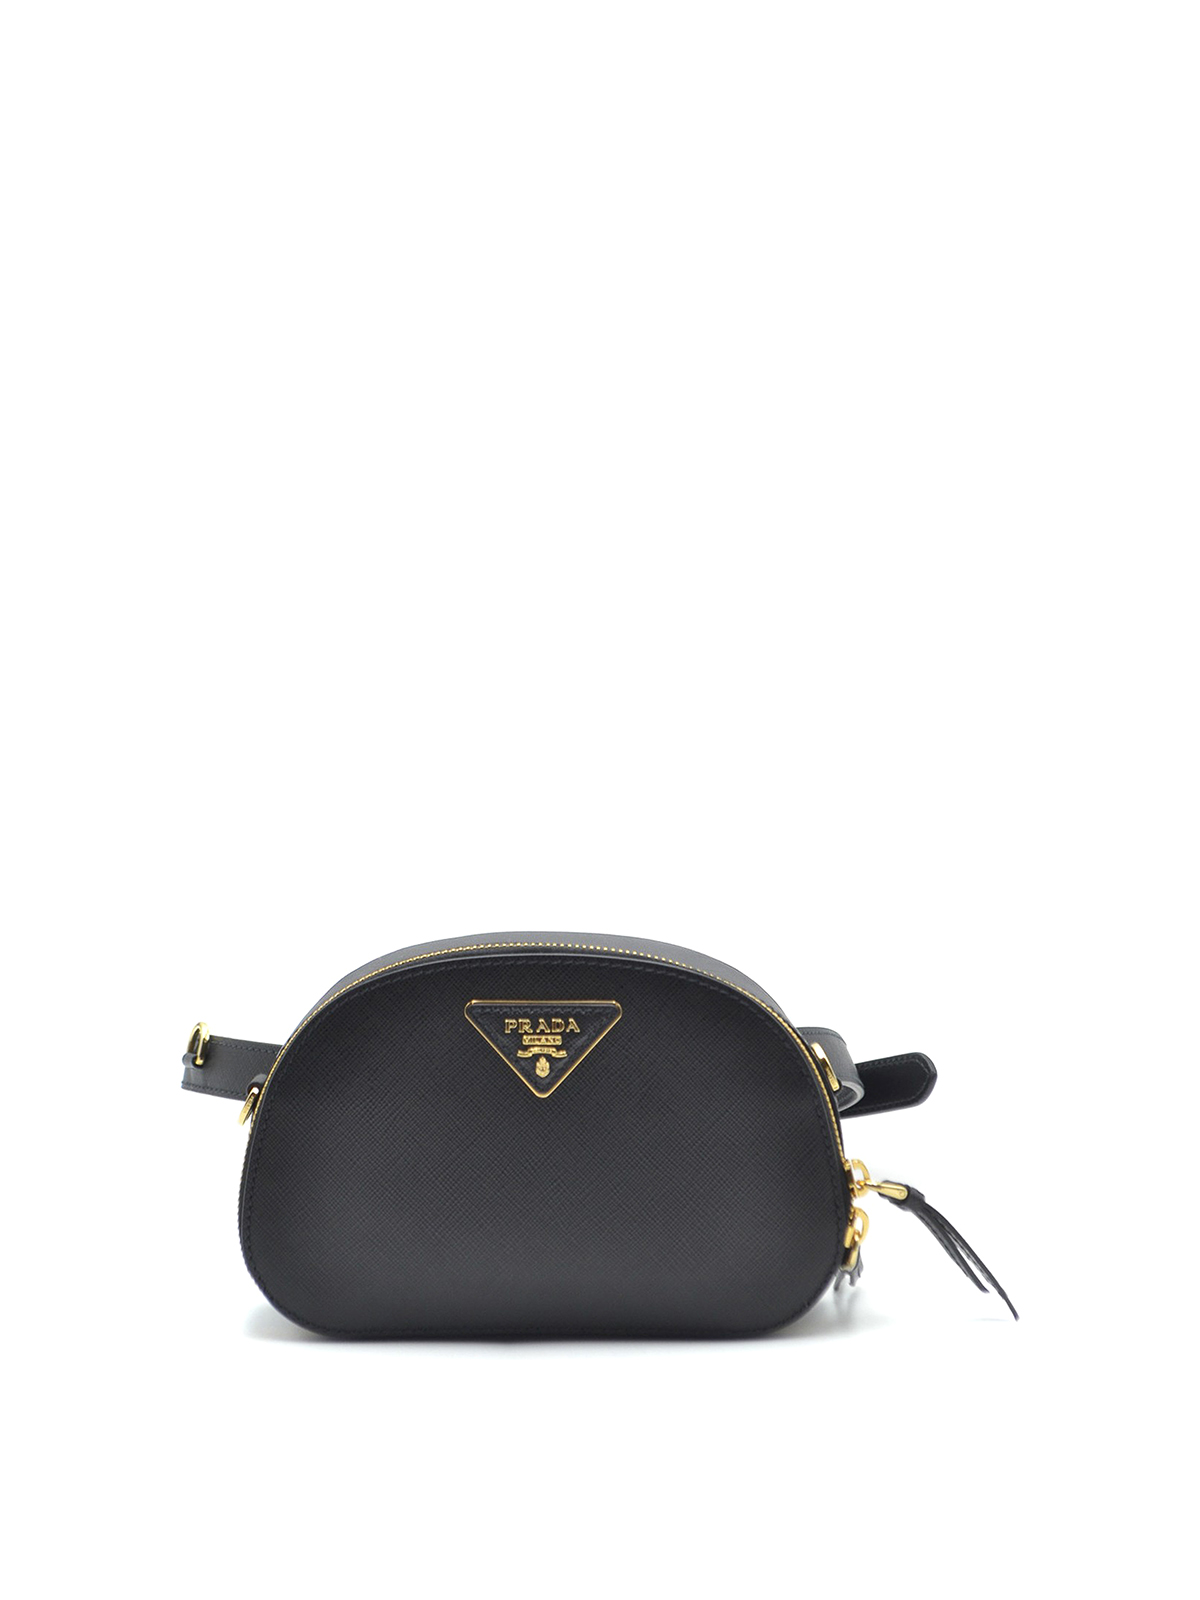 Prada Odette Saffiano Leather Belt Bag in Black